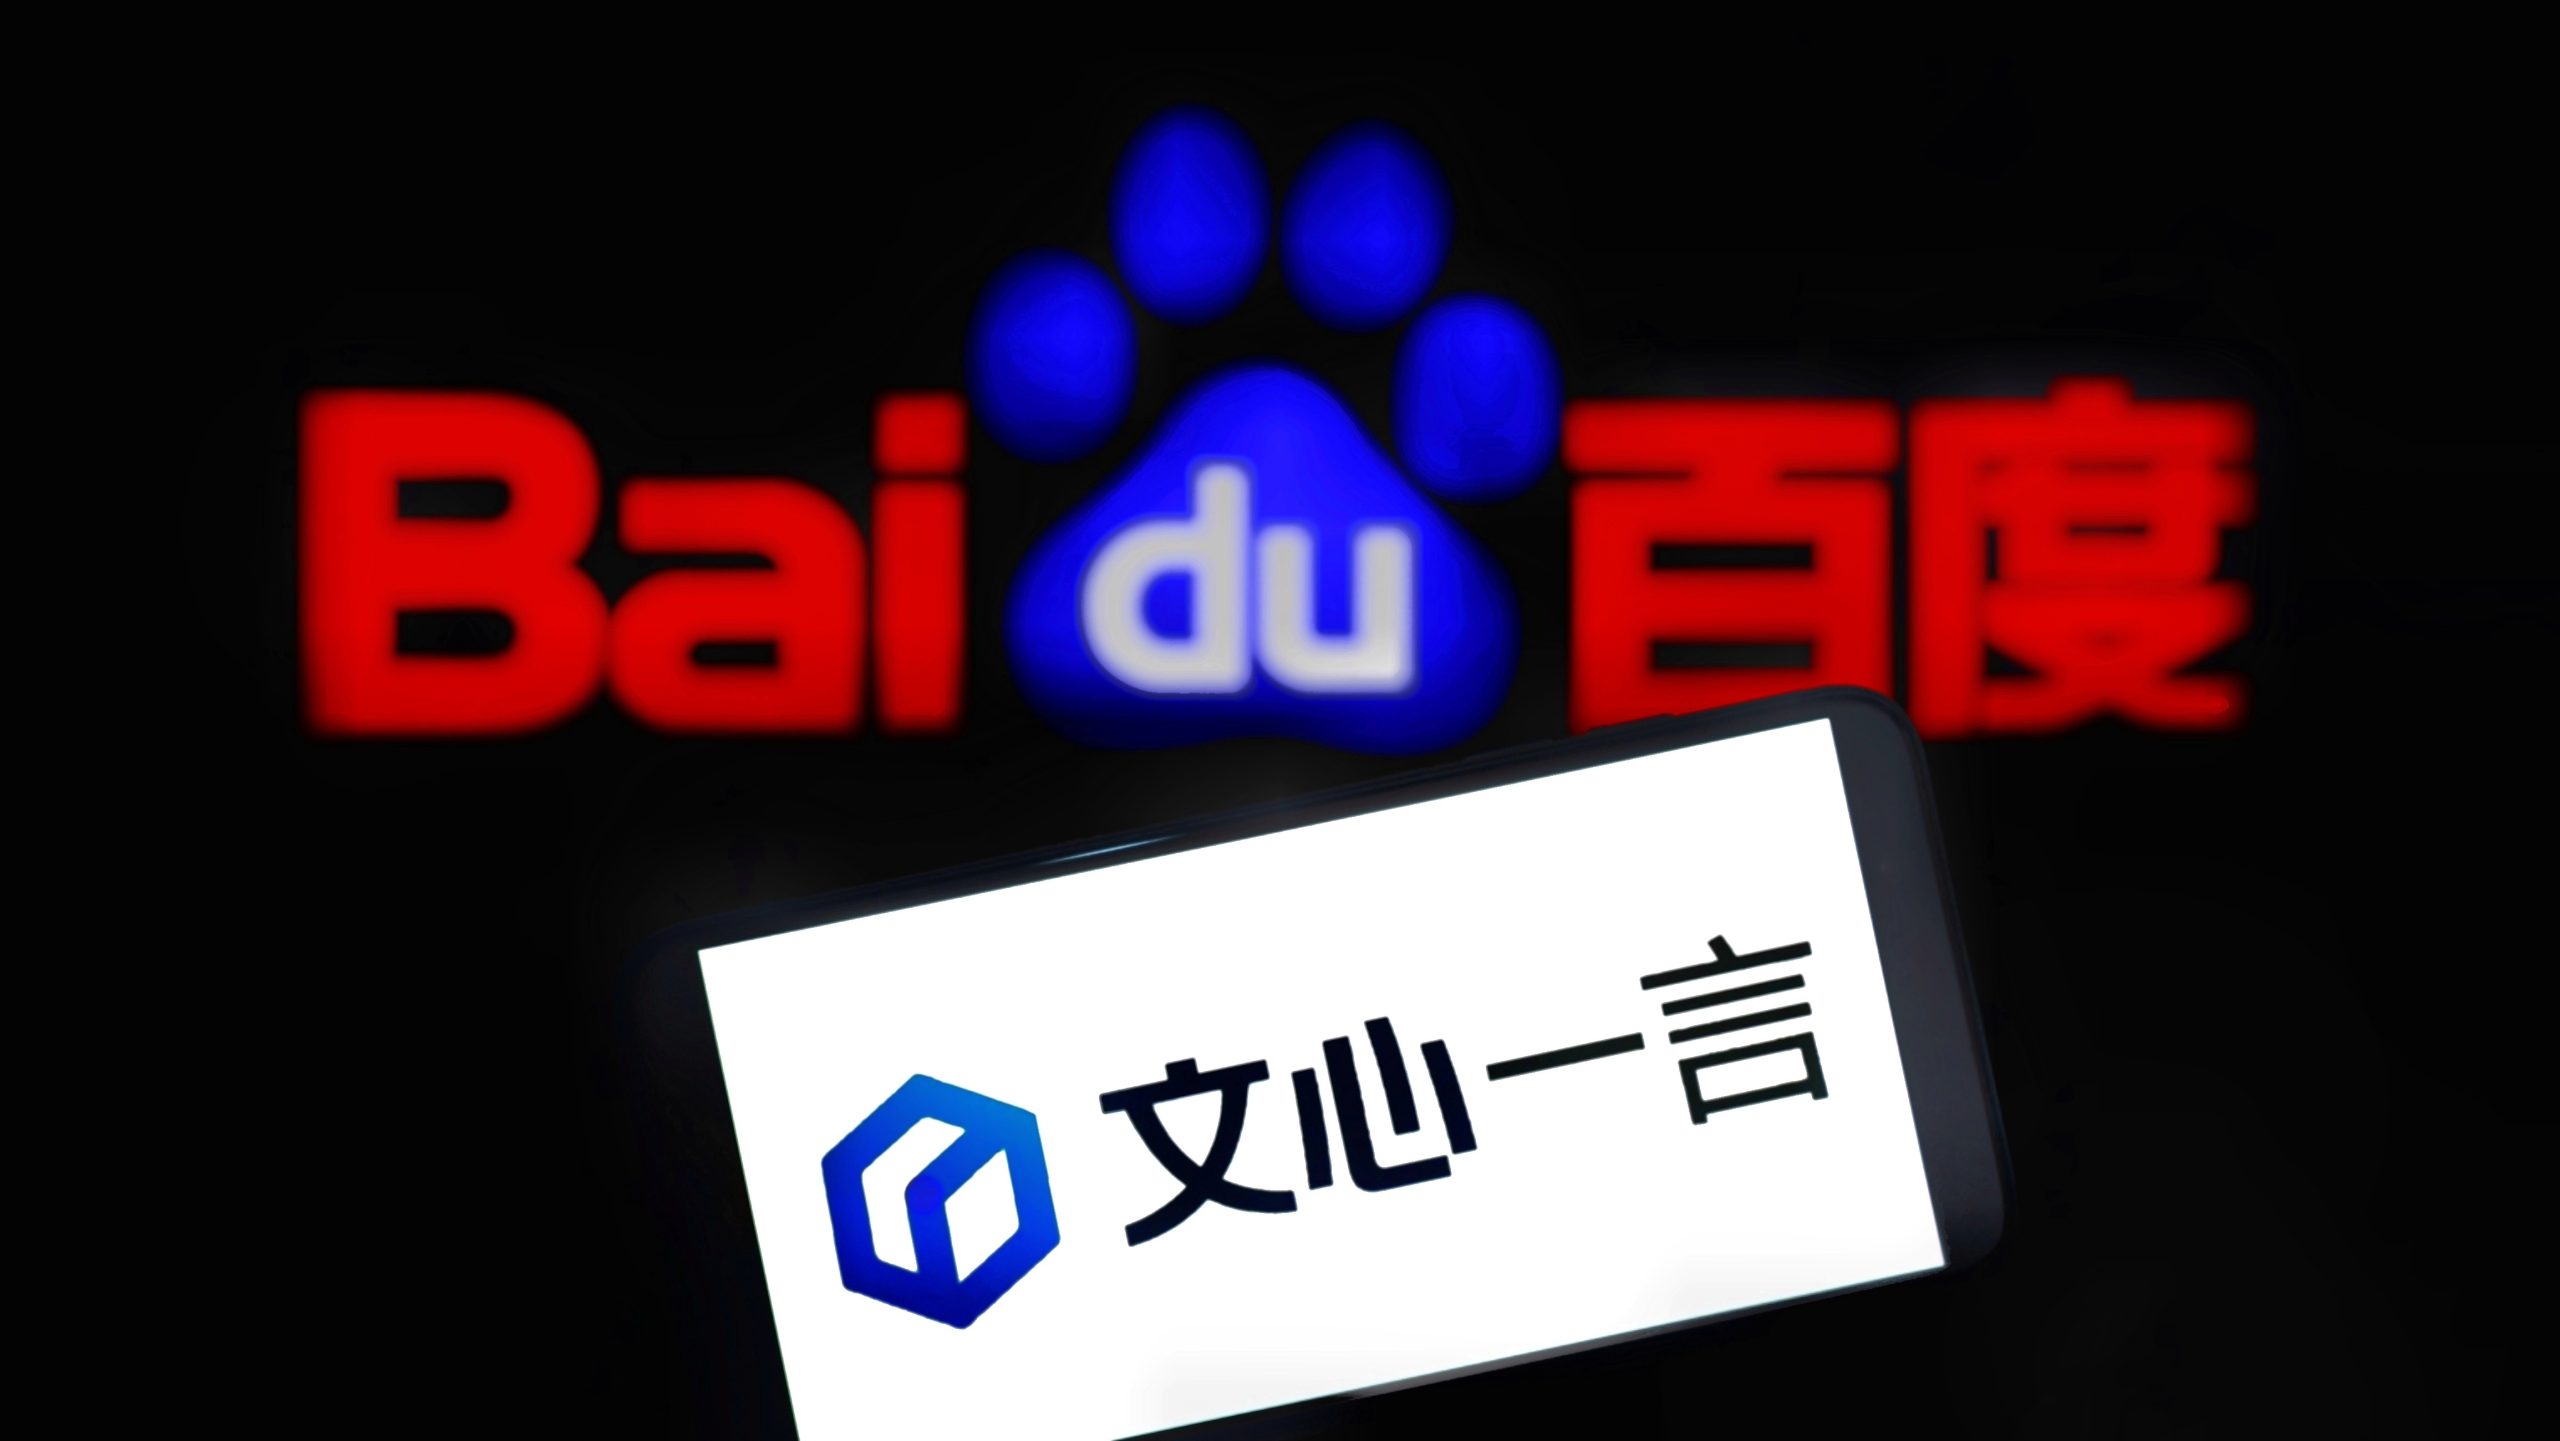 Imagem mostra um smartphone exibindo a logomarca do ErnieBot, o chatbot de IA no Baidu